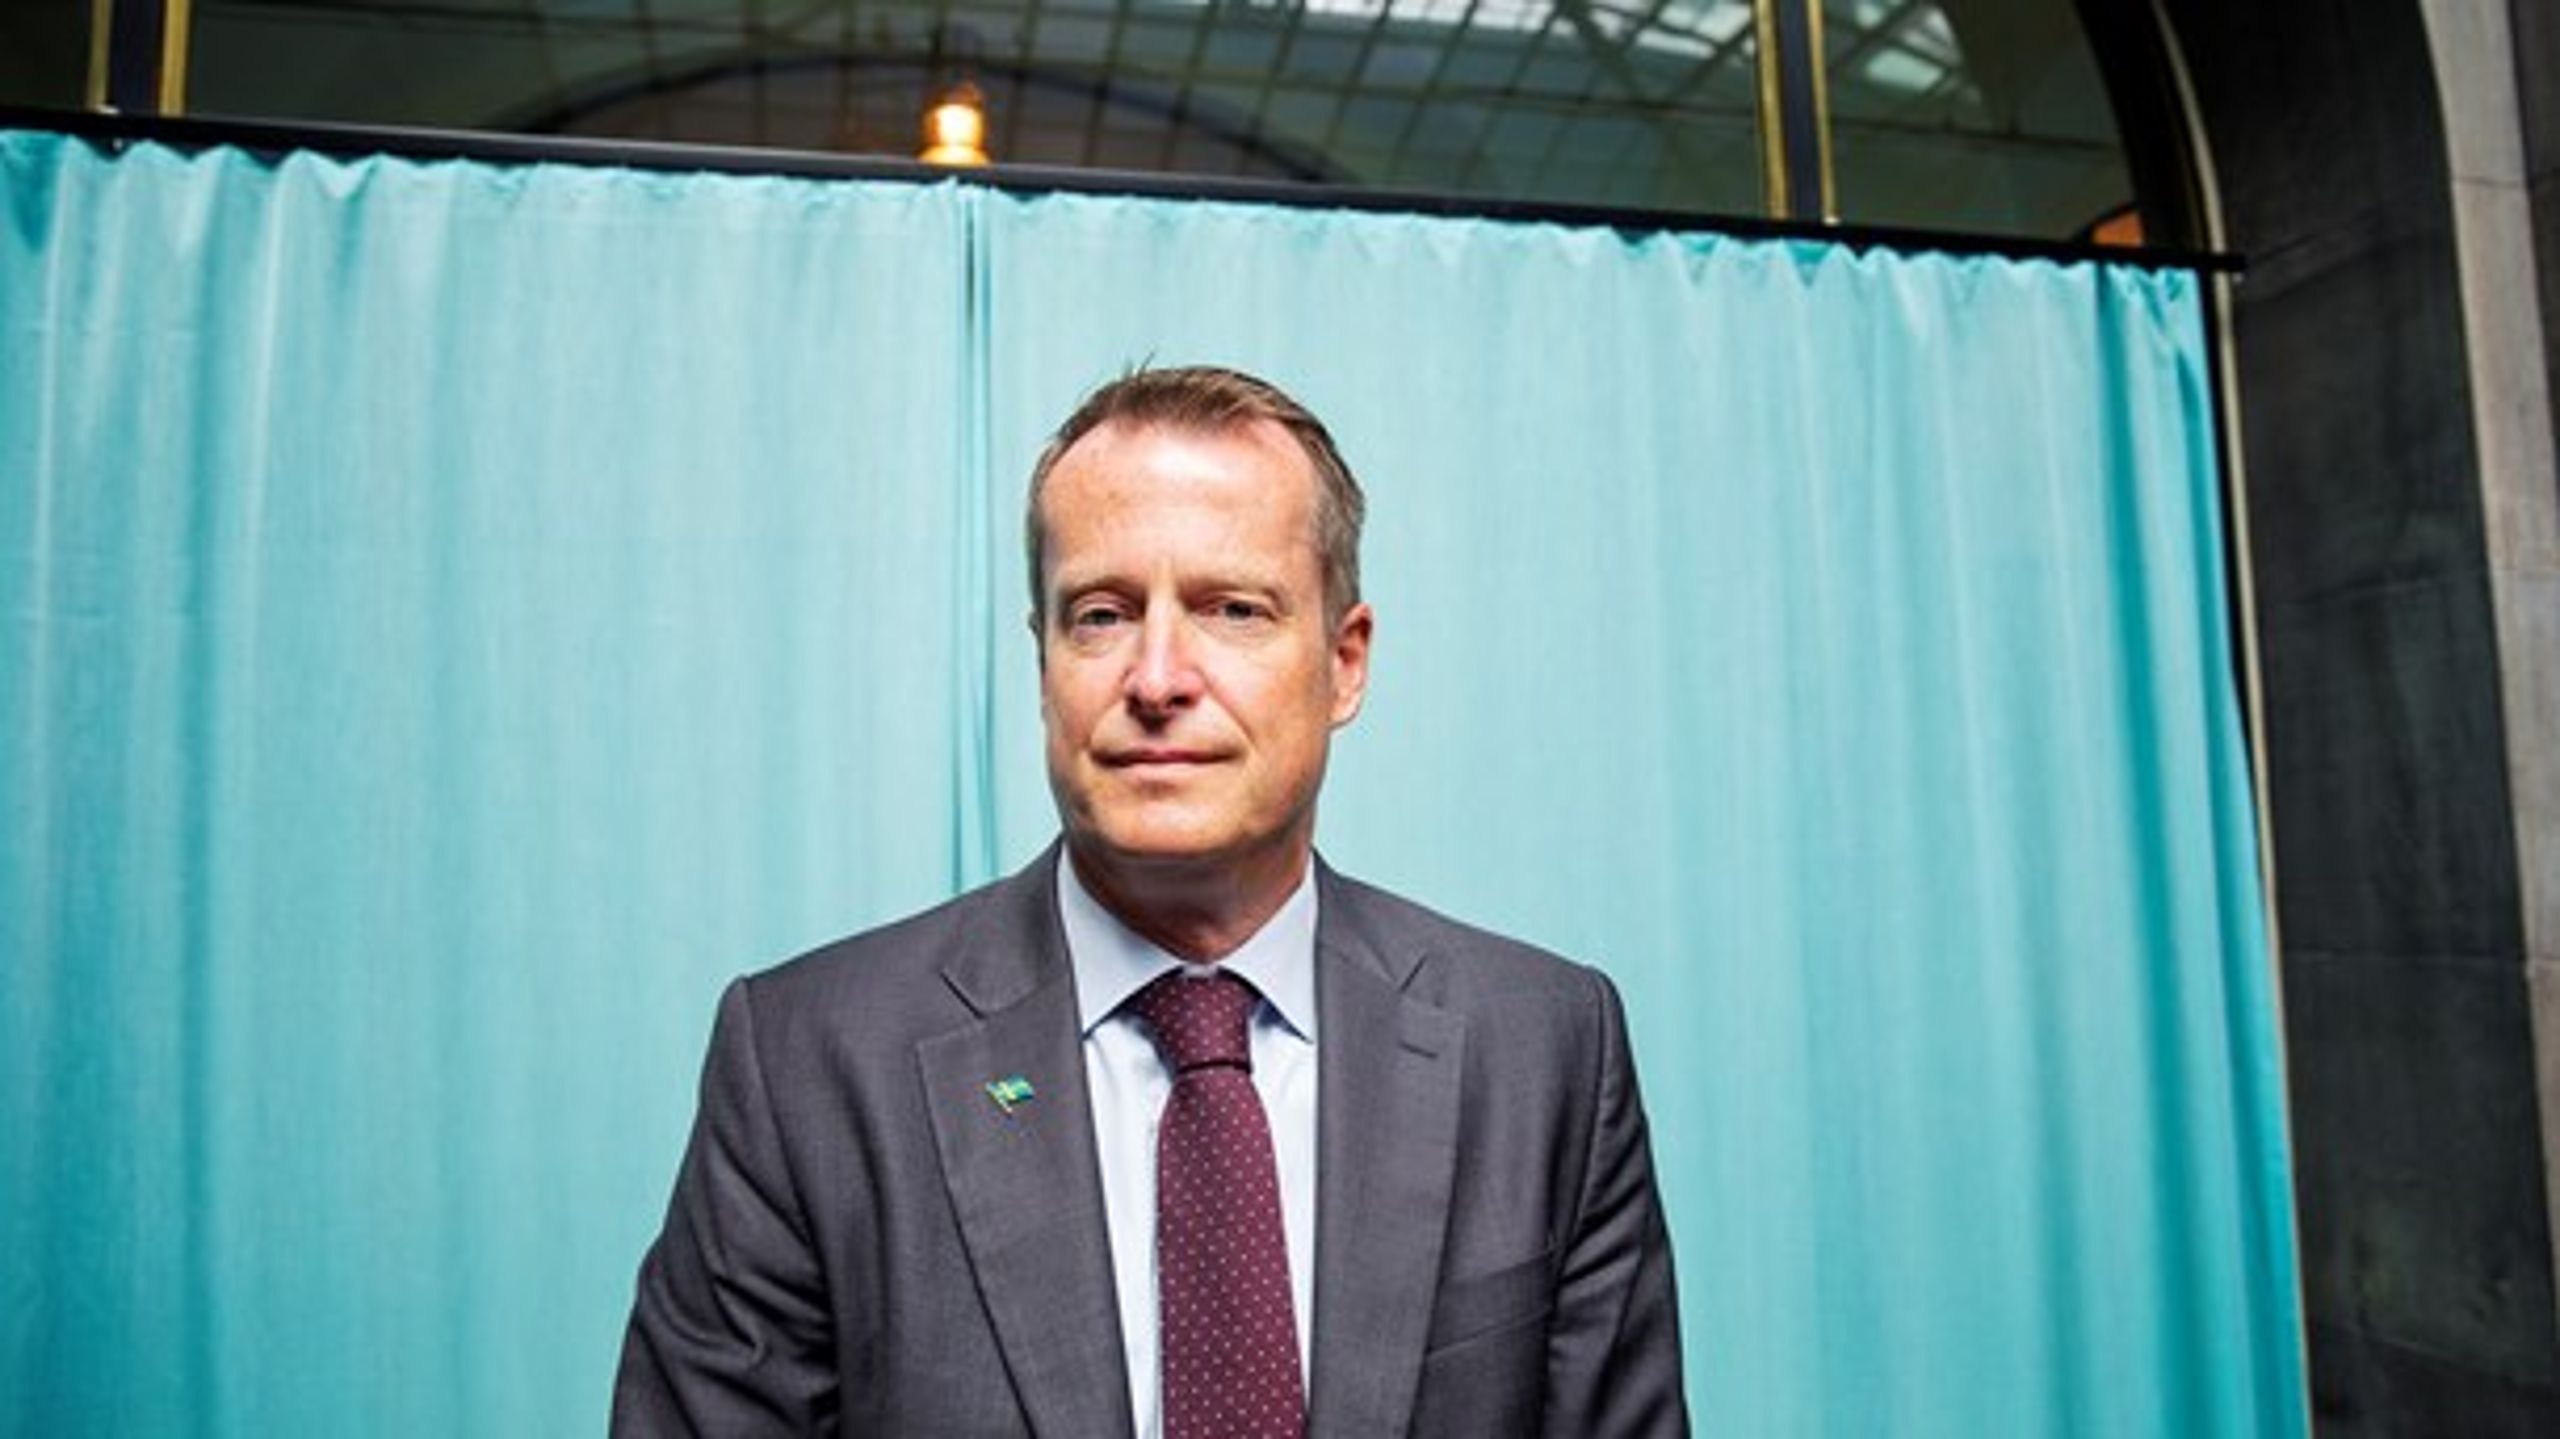 Trots kritiken går energiminister Anders Ygeman (S) vidare med förslaget att minska anslutningsavgifterna för vindkraft till havs. Regeringen tror sig också ha hittat ett sätt att inte fastna i EU:s regler för otillåtet statsstöd.